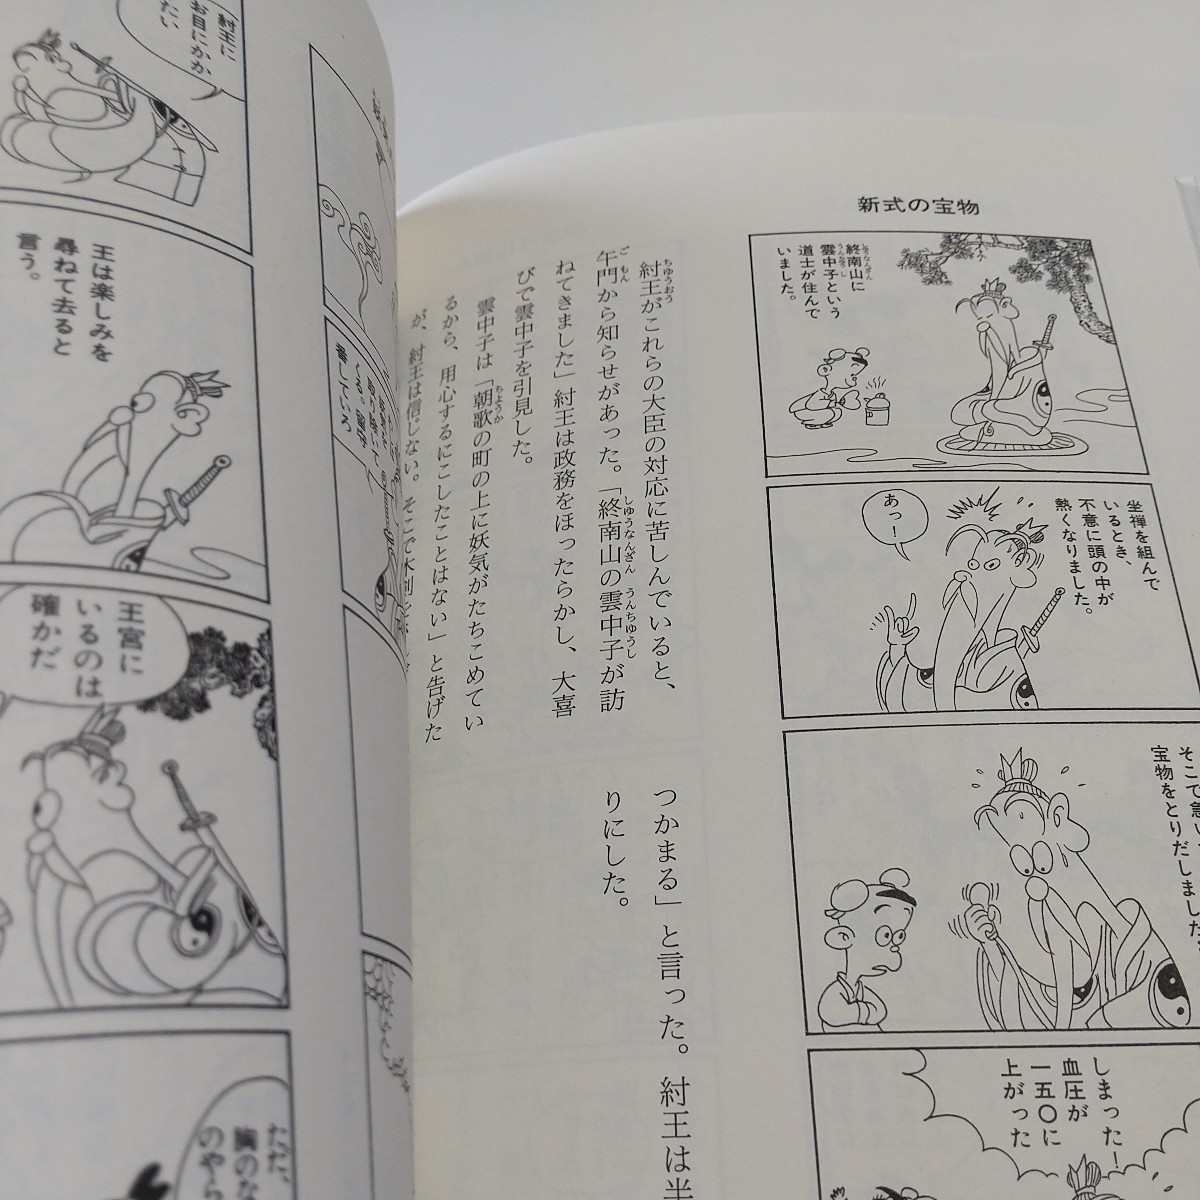  смех .. читать Fuukami Engi manga (манга) версия (Kodansha sophia books)...| произведение . мир рисовое поле ..| перевод б/у 